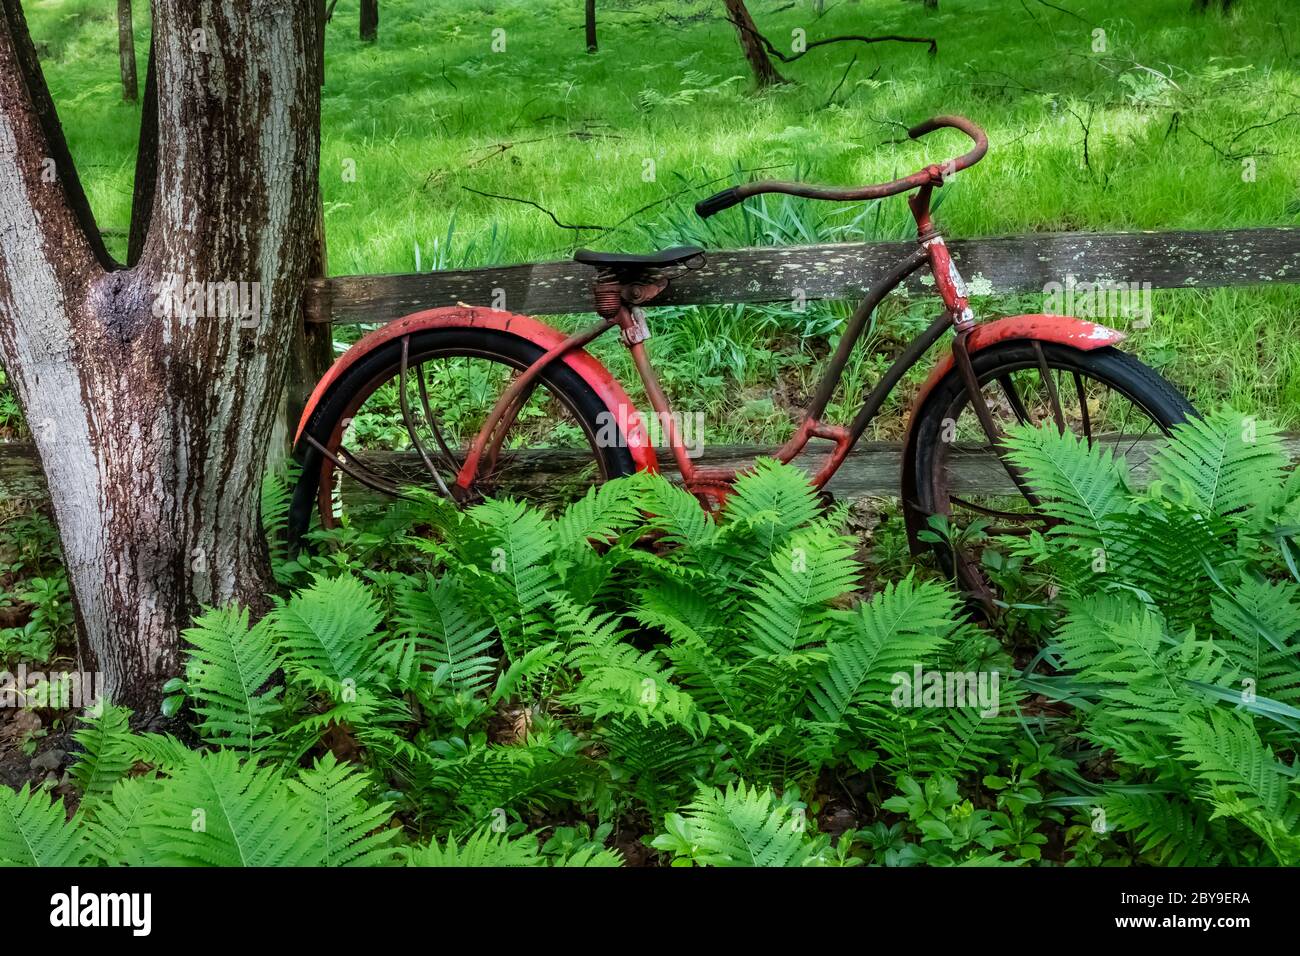 Vintage Mädchen Roadmaster Fahrrad von der Cleveland Welding Company, jetzt  eine Gartendekoration in Canadian Lakes in Zentral Michigan, USA  Stockfotografie - Alamy